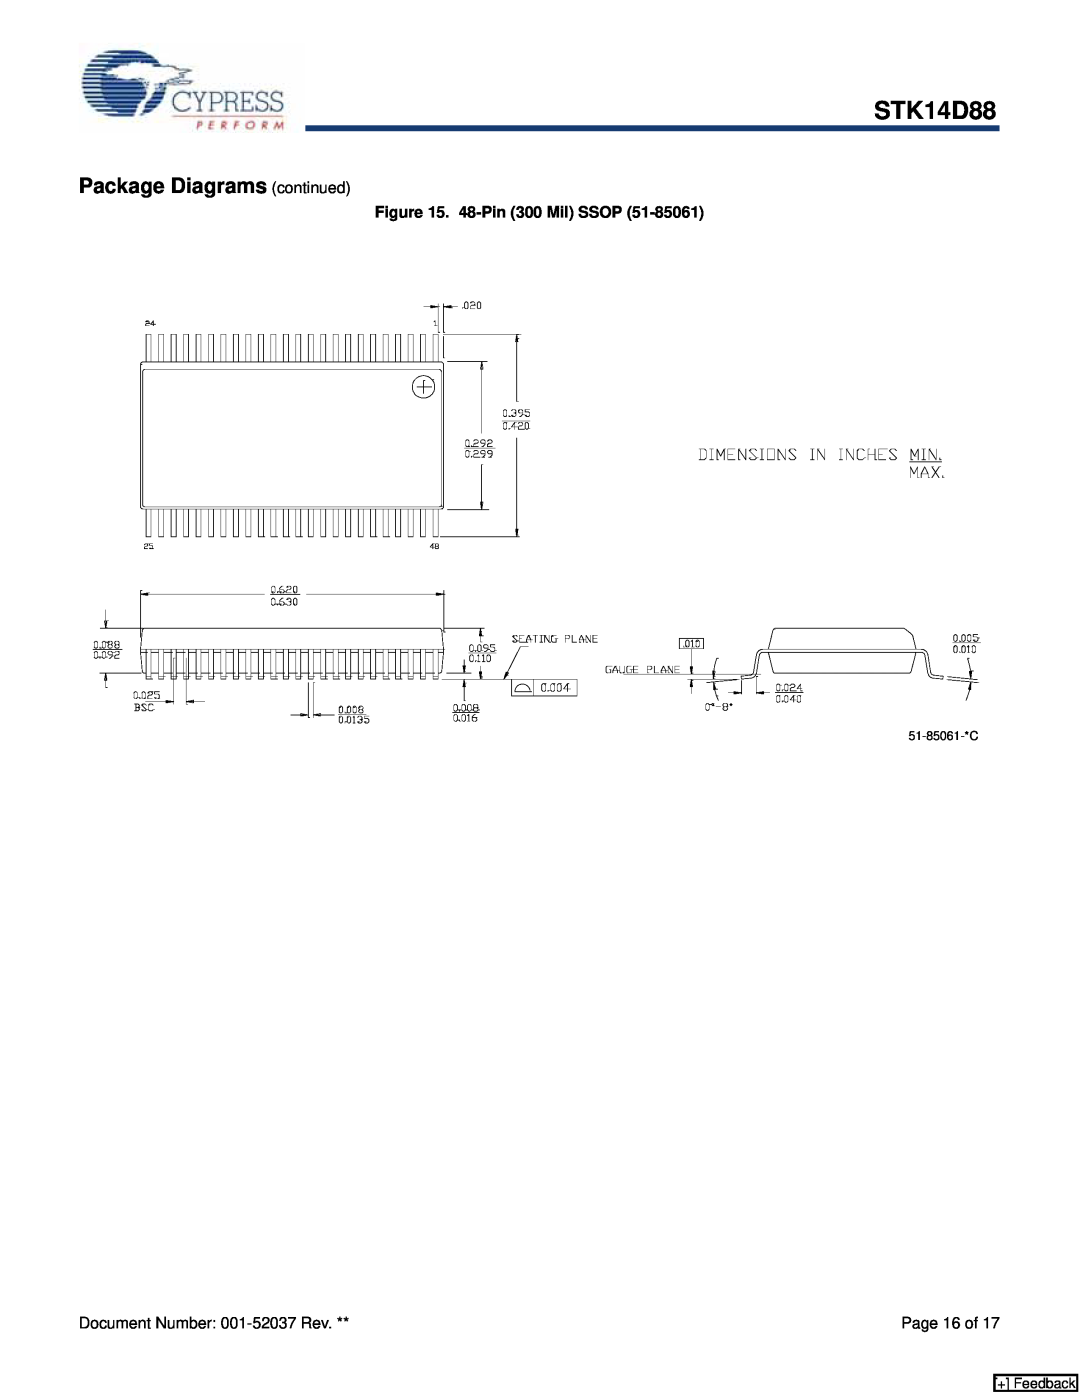 Cypress STK14D88 manual Package Diagrams continued, 48-Pin 300 Mil SSOP, + Feedback 